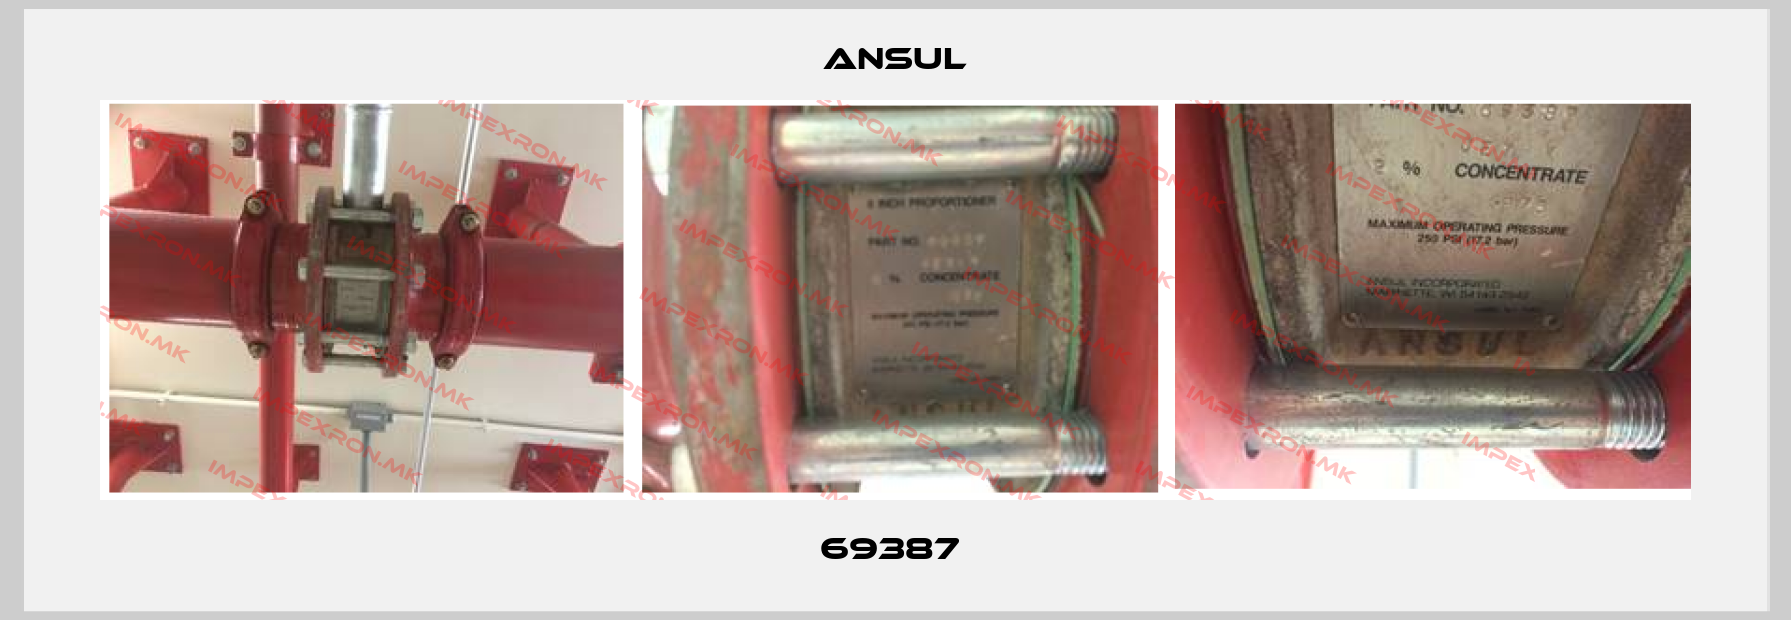 Ansul-69387 price